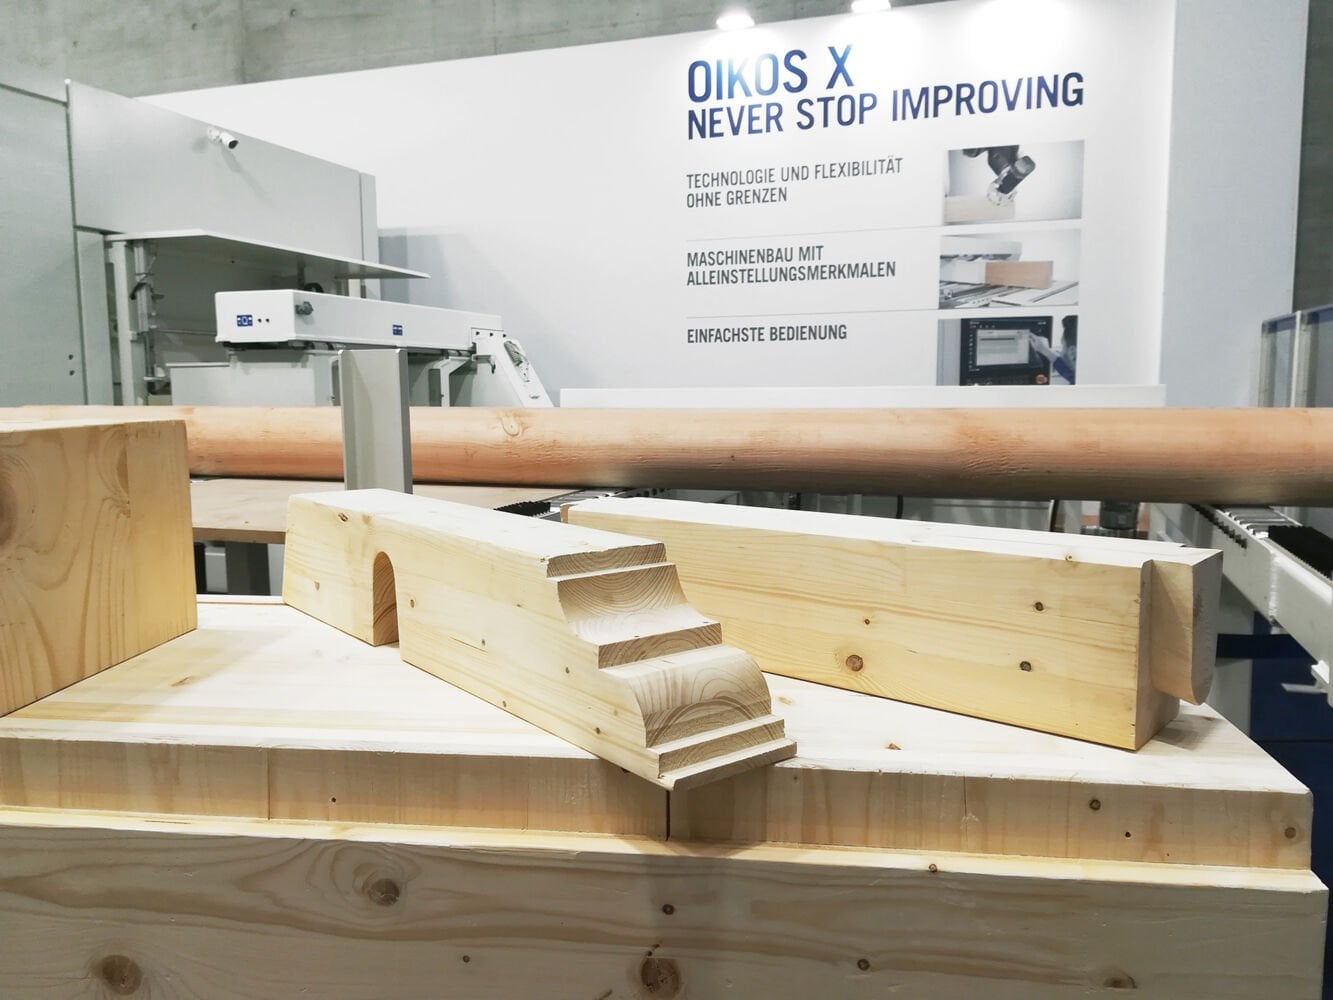 A Scm na Dach+Holz: uma nova era para a construção civil em madeira